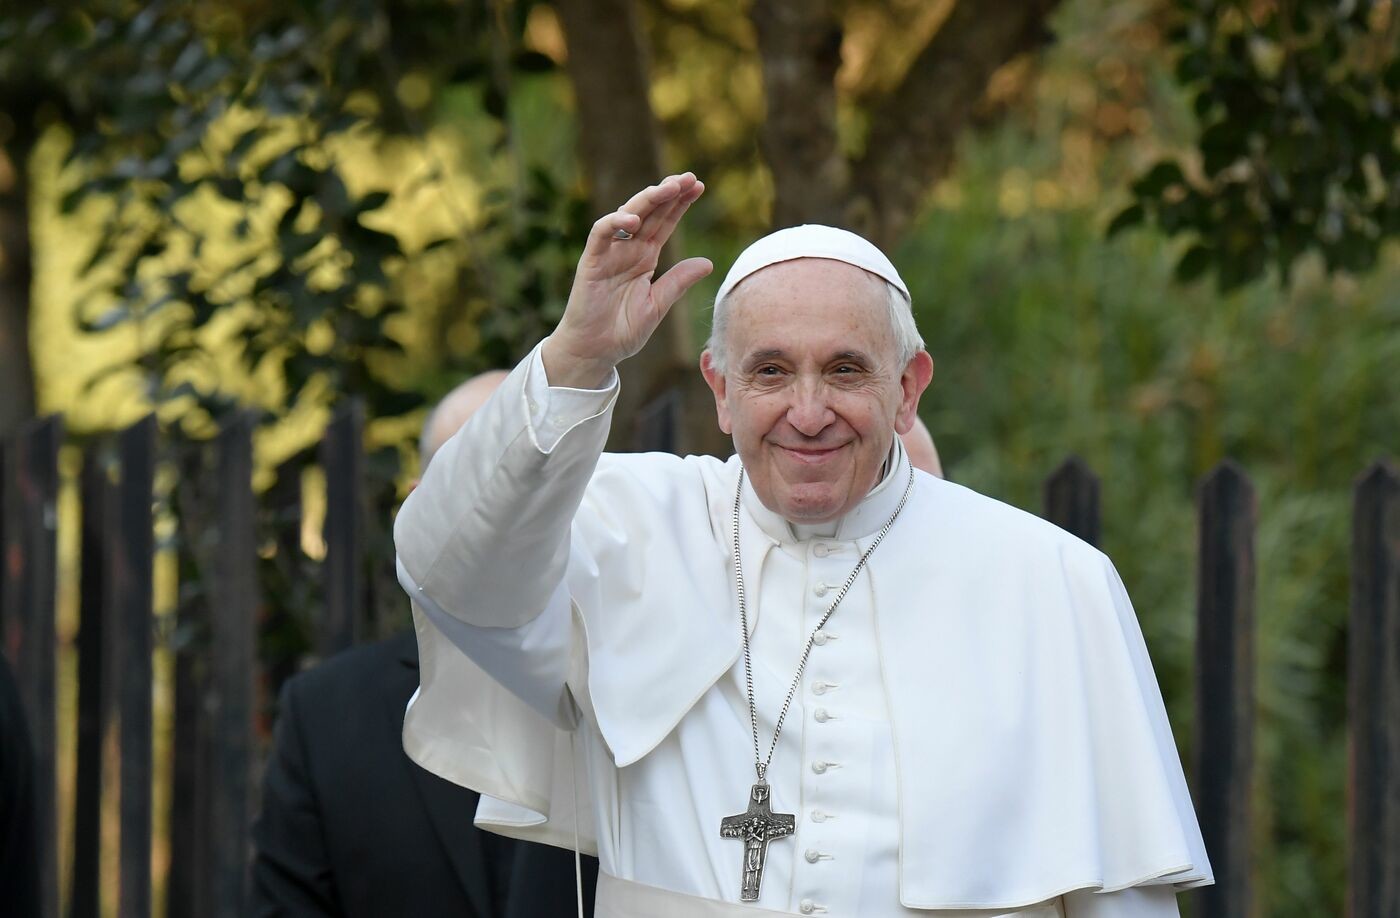 Clima, l’appello di una 12enne al Papa: “Facciamo una Pasqua Vegan”. In ballo un progetto da 1 milione di dollari